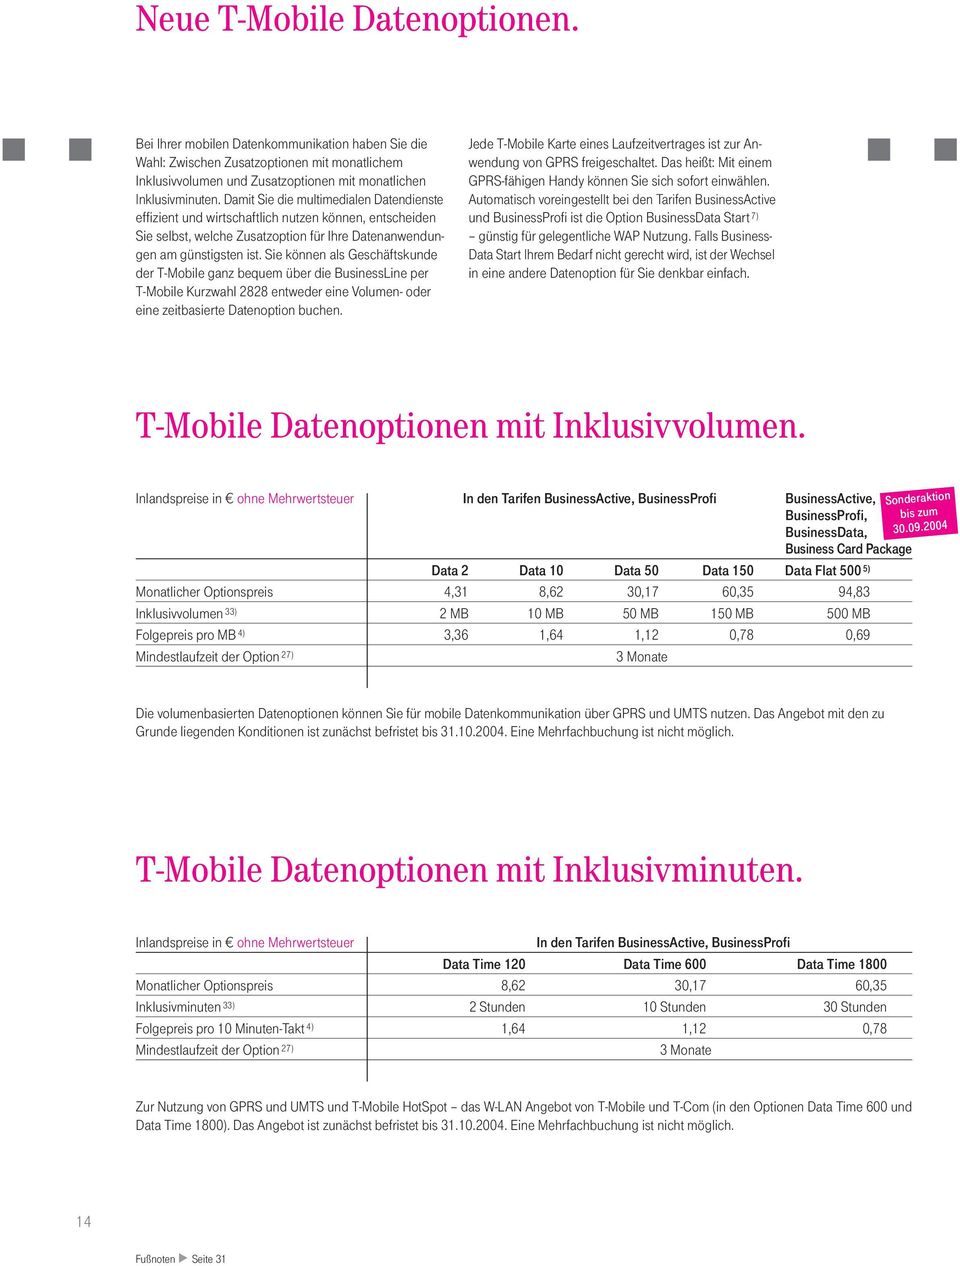 Sie können als Geschäftskunde der T-Mobile ganz bequem über die BusinessLine per T-Mobile Kurzwahl 2828 entweder eine Volumen- oder eine zeitbasierte Datenoption buchen.